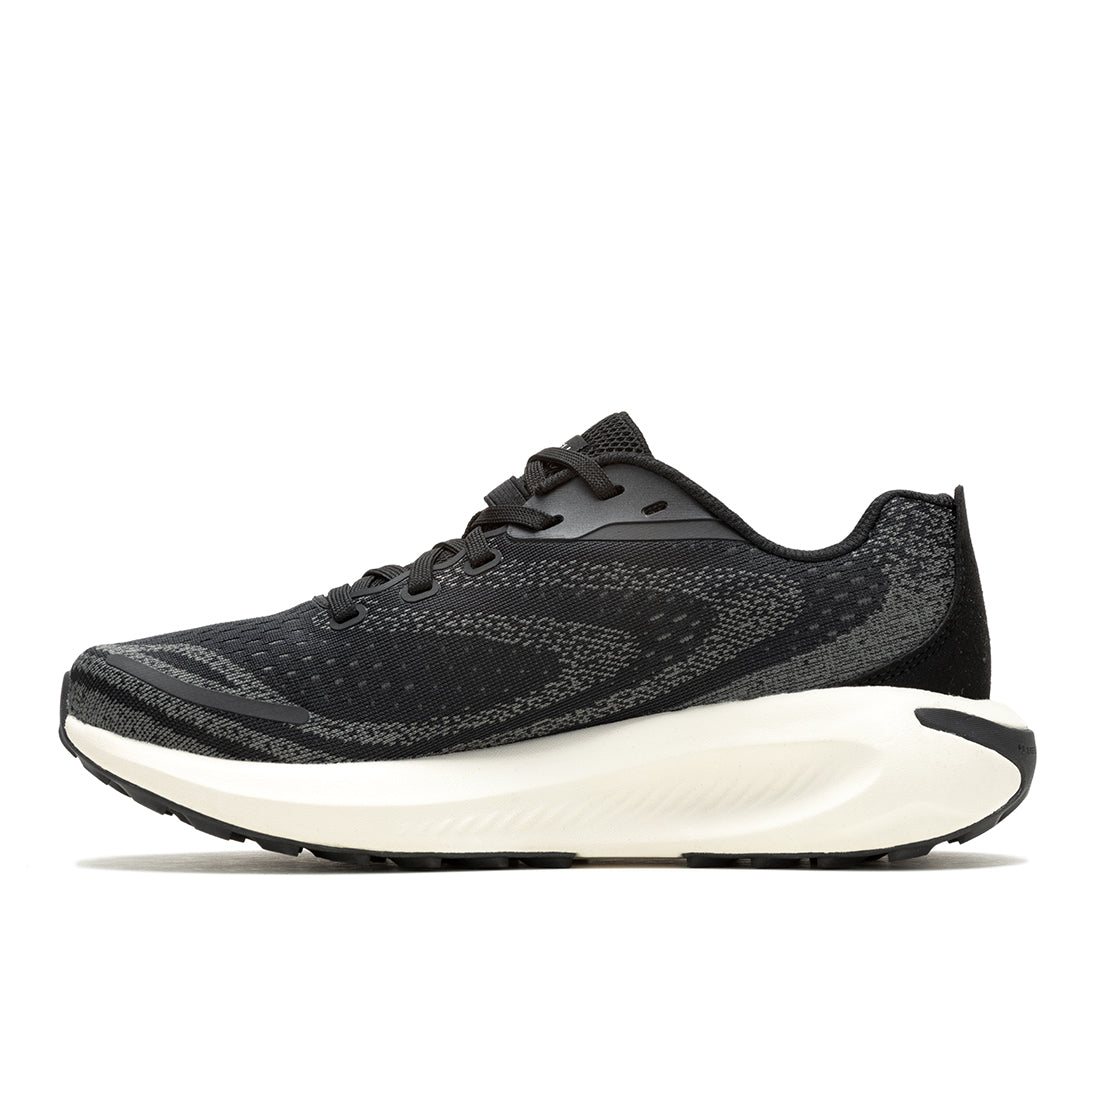 Morphlite – Black/White Womens Trail Running Shoes - 0